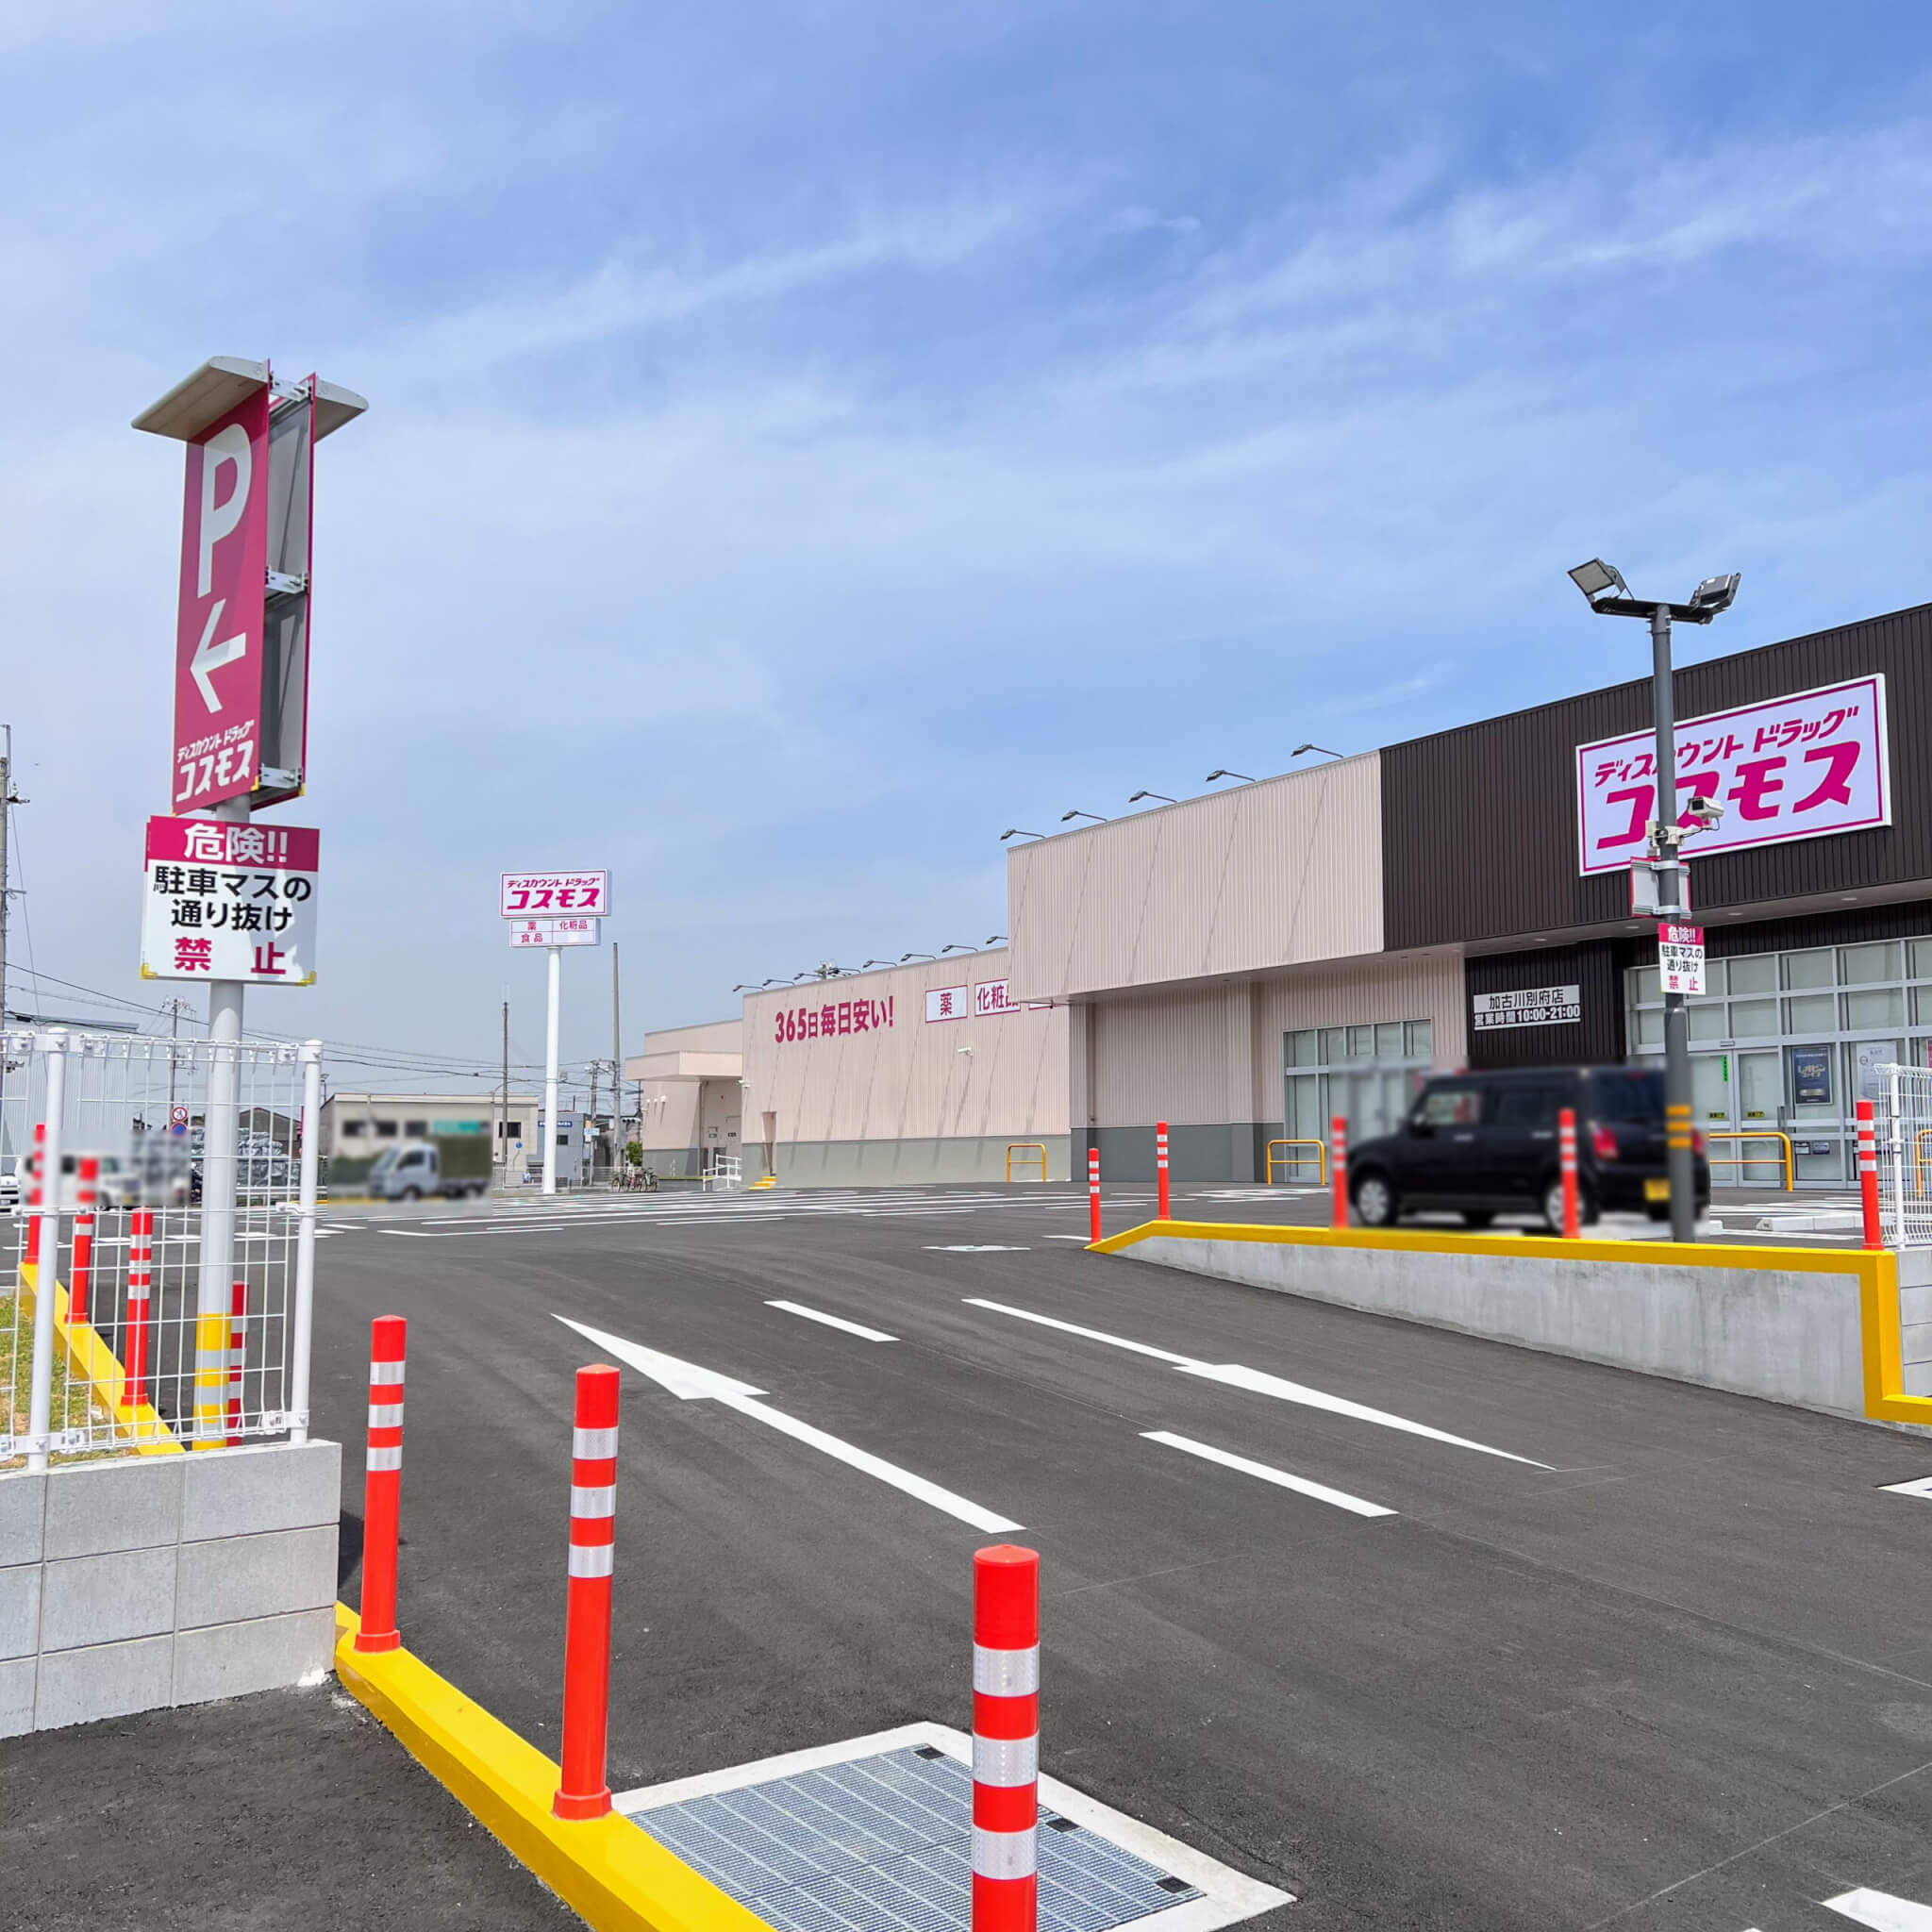 ドラッグコスモス加古川別府町店の店舗入口近くの駐車場入口。